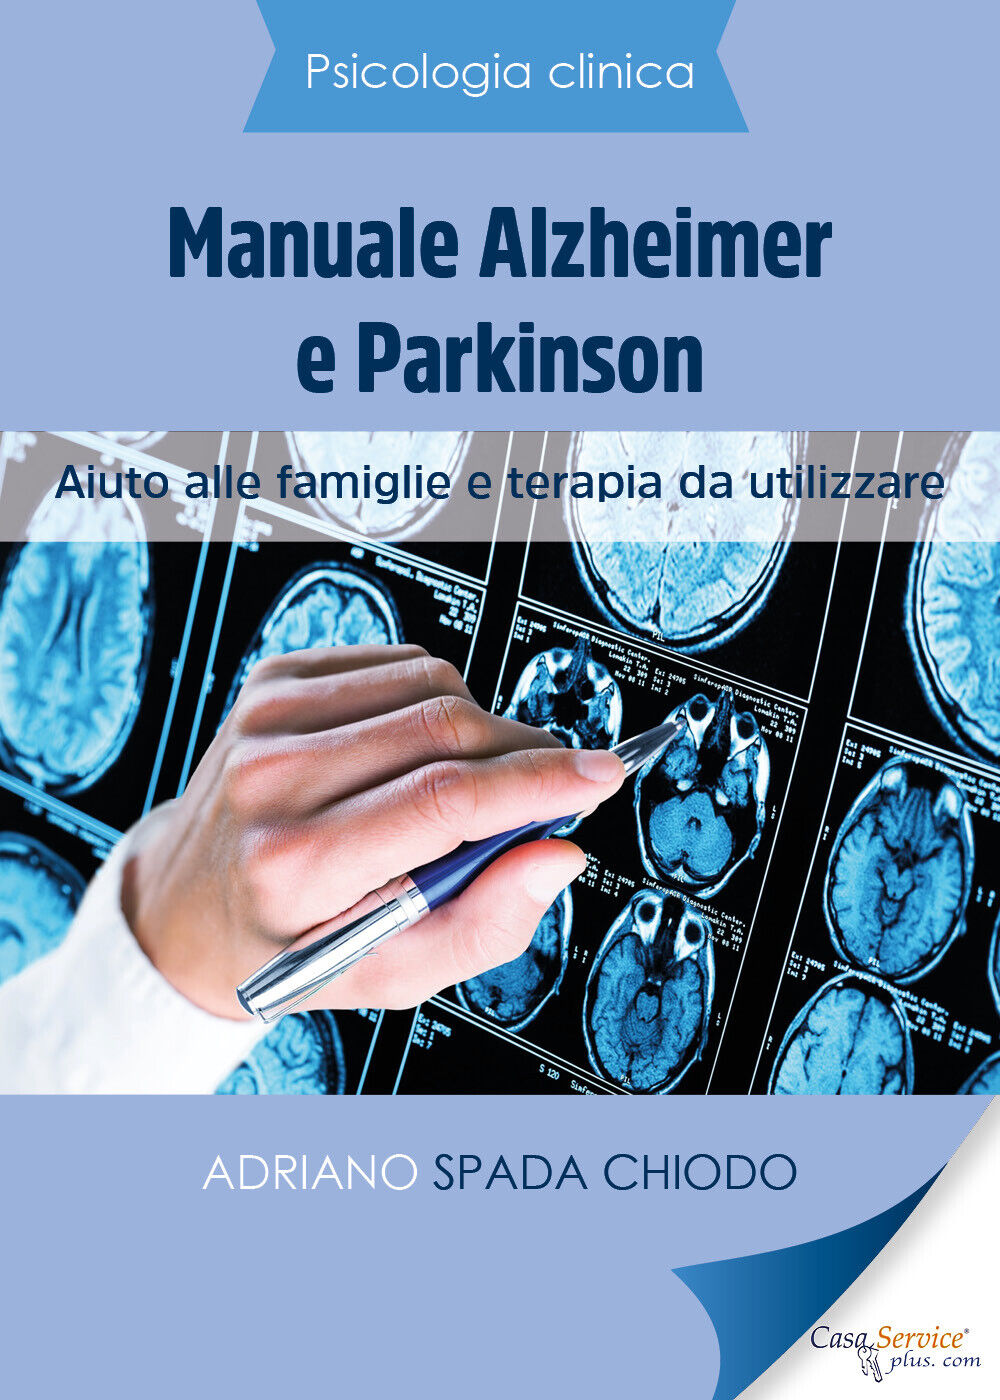 Psicologia Clinica - Manuale Alzheimer e Parkinson - Aiuto alle famiglie e terap